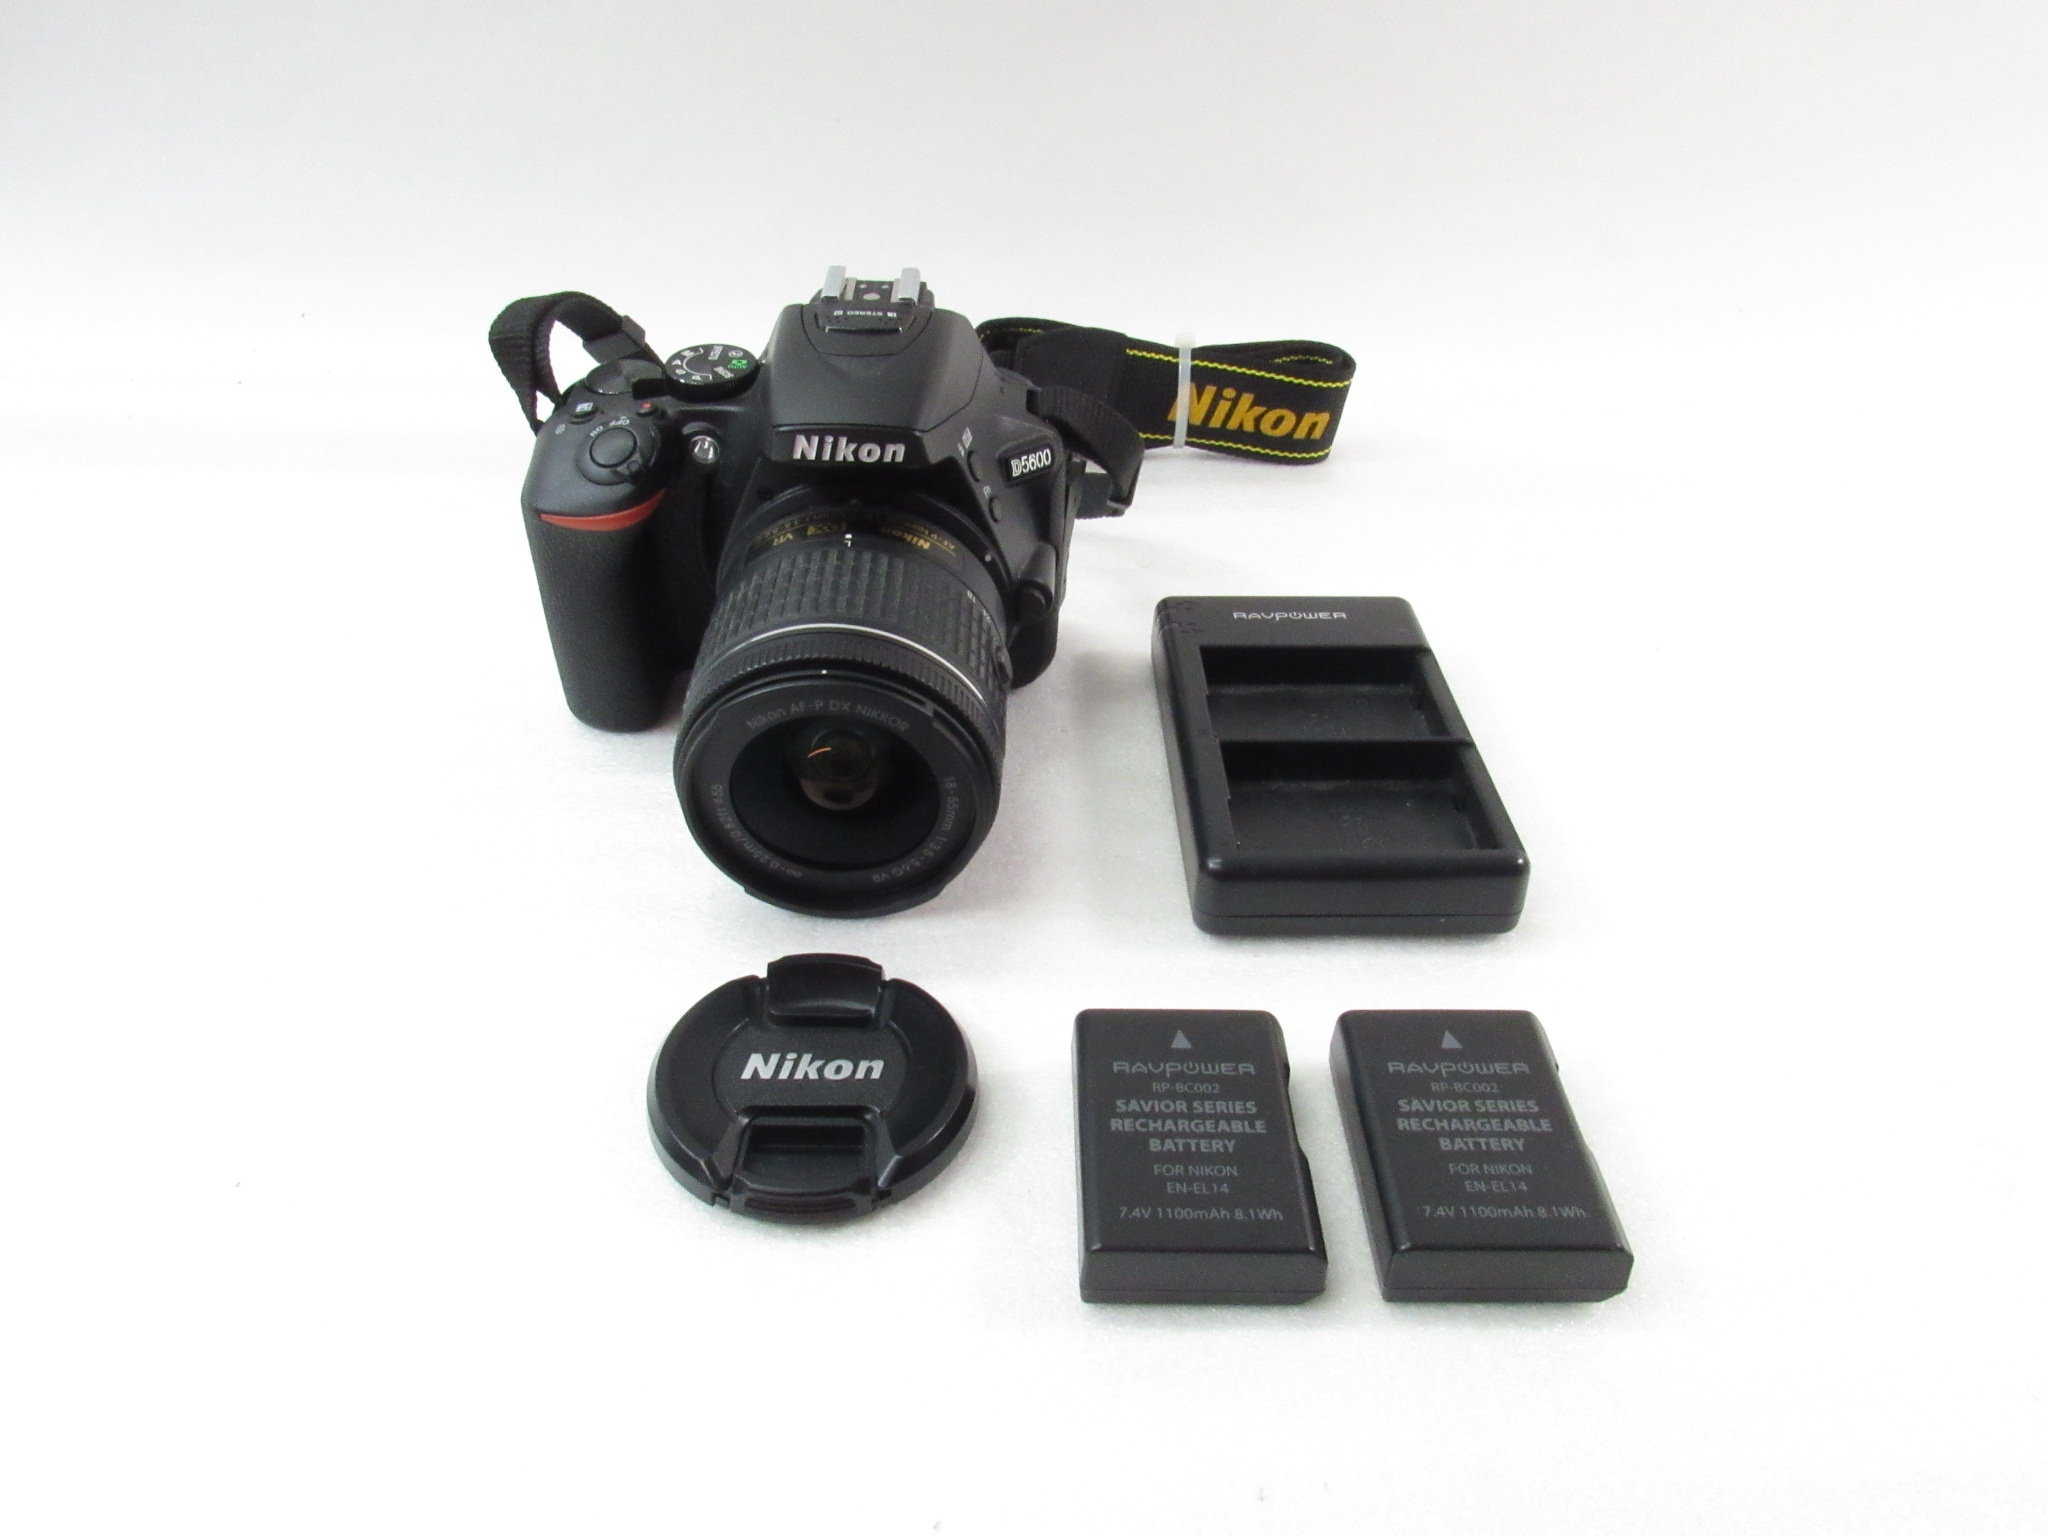 Nikon D5600 24.2MP Digital SLR Camera - Black (Body Only) for sale online